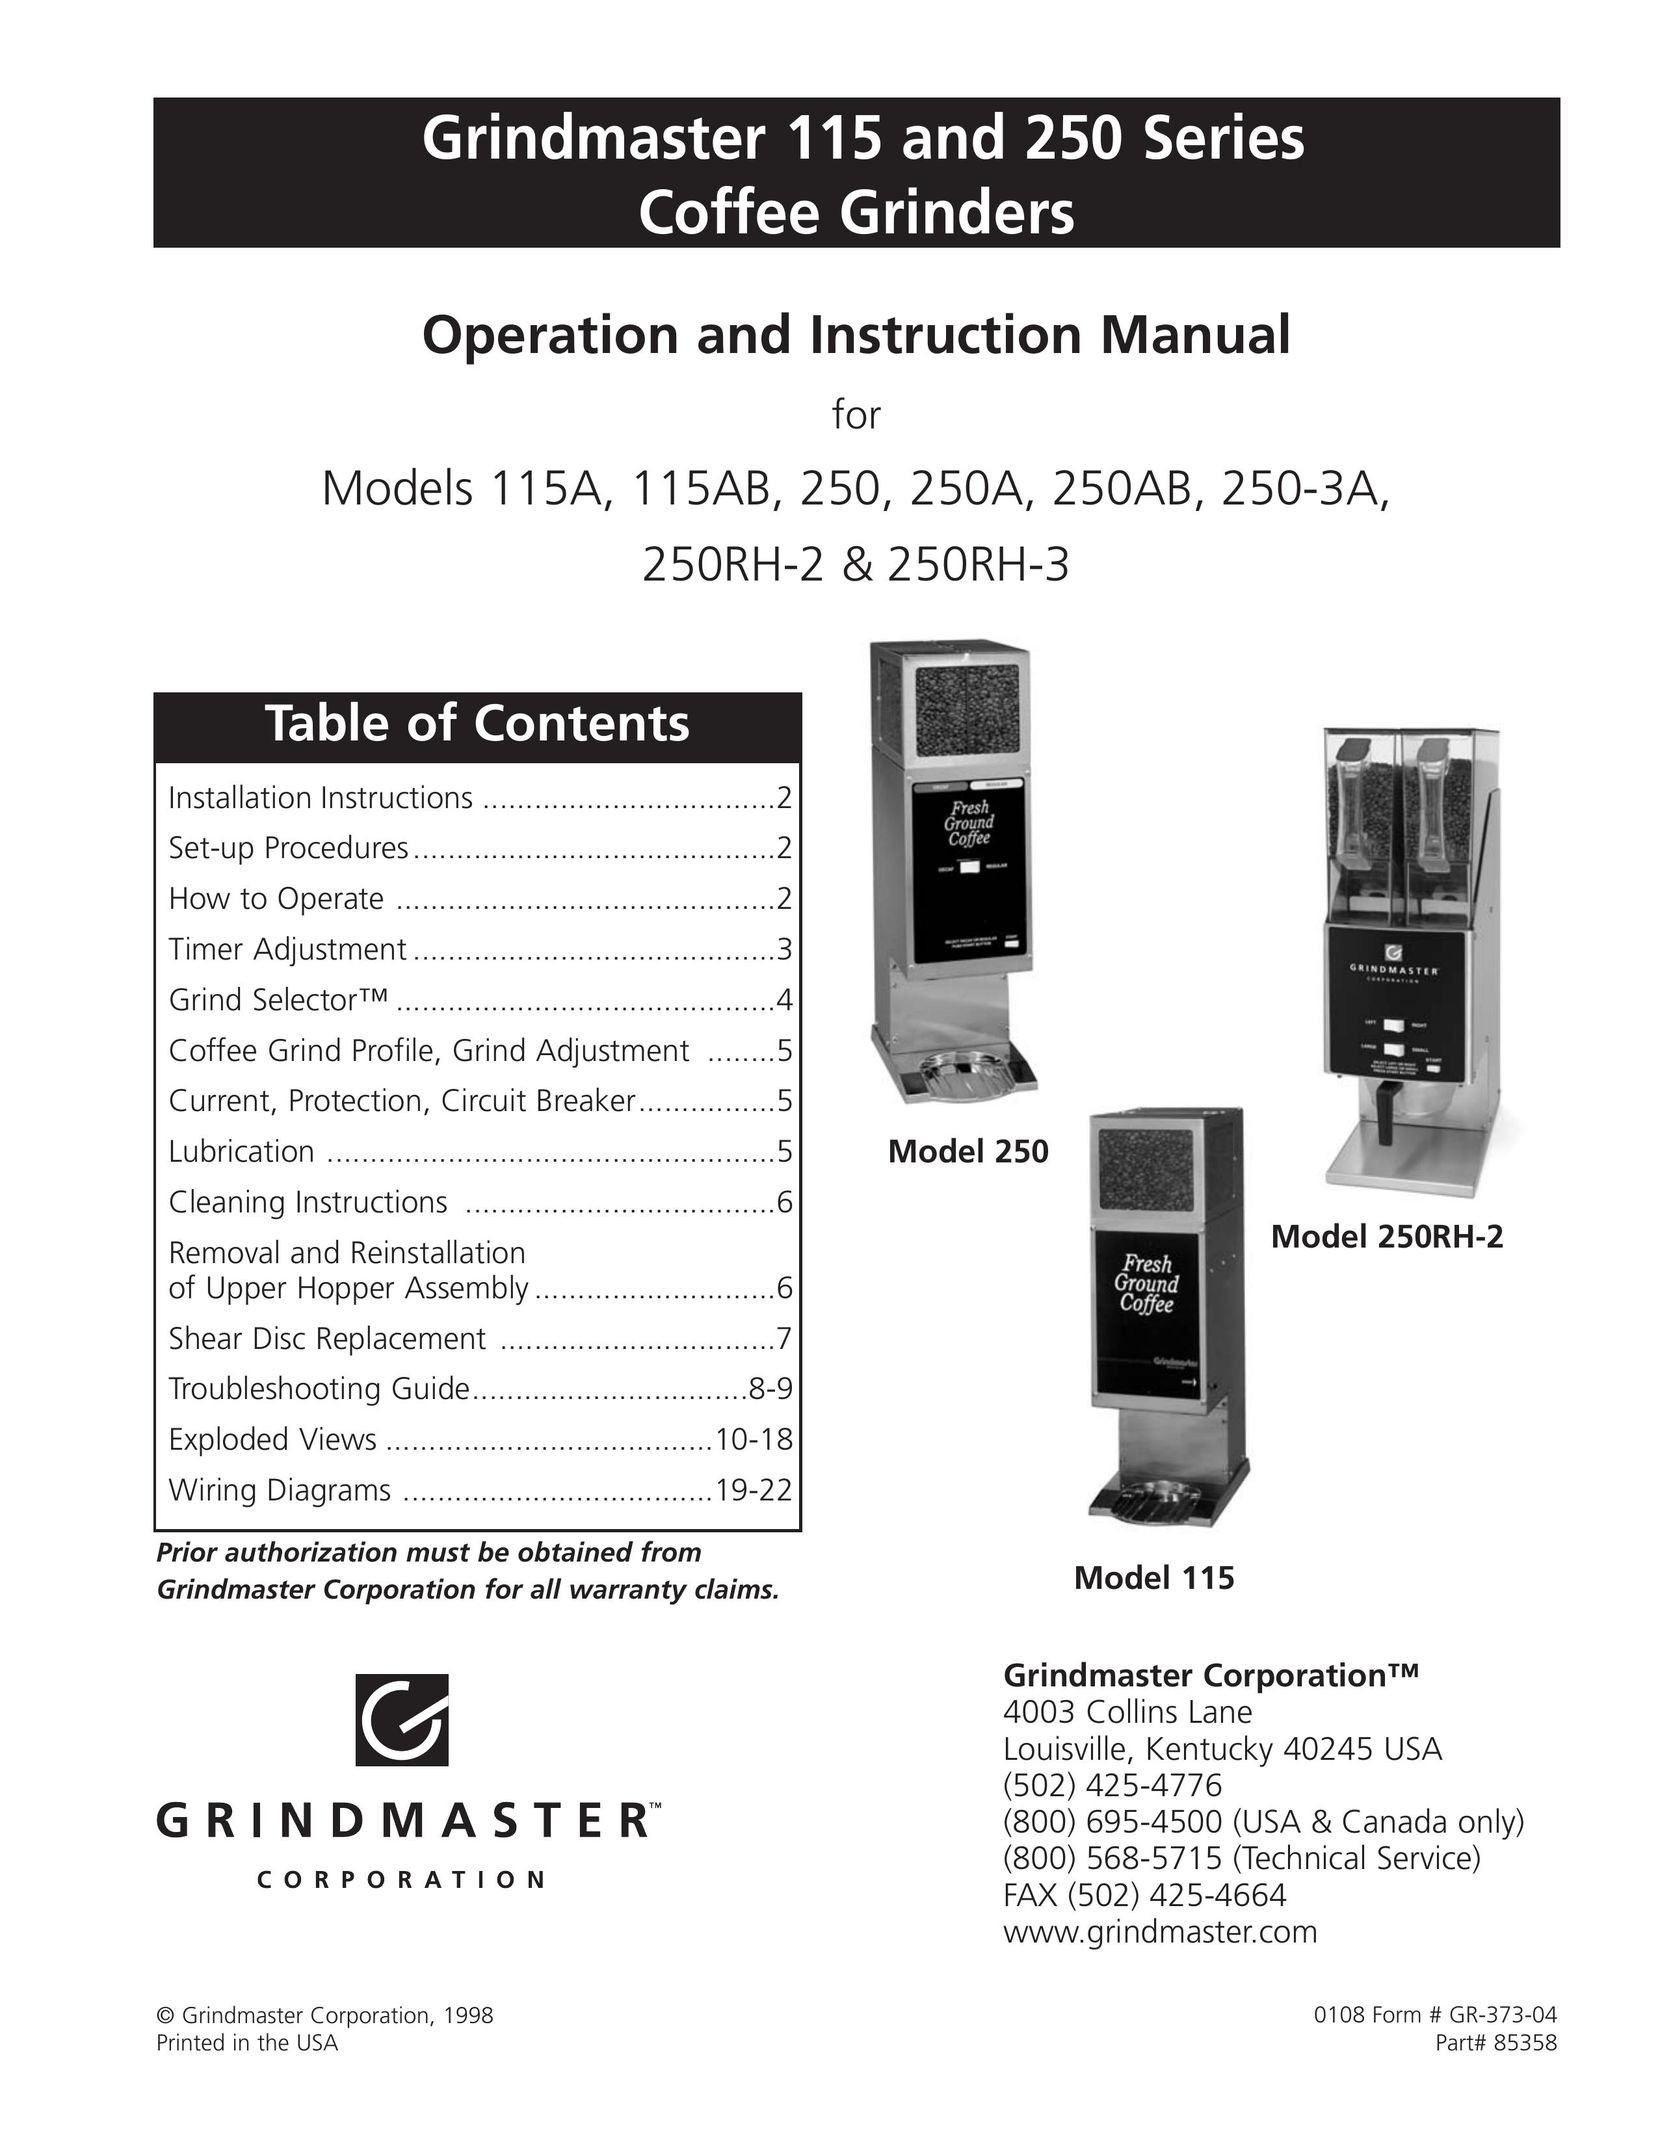 Grindmaster 250AB Coffee Grinder User Manual